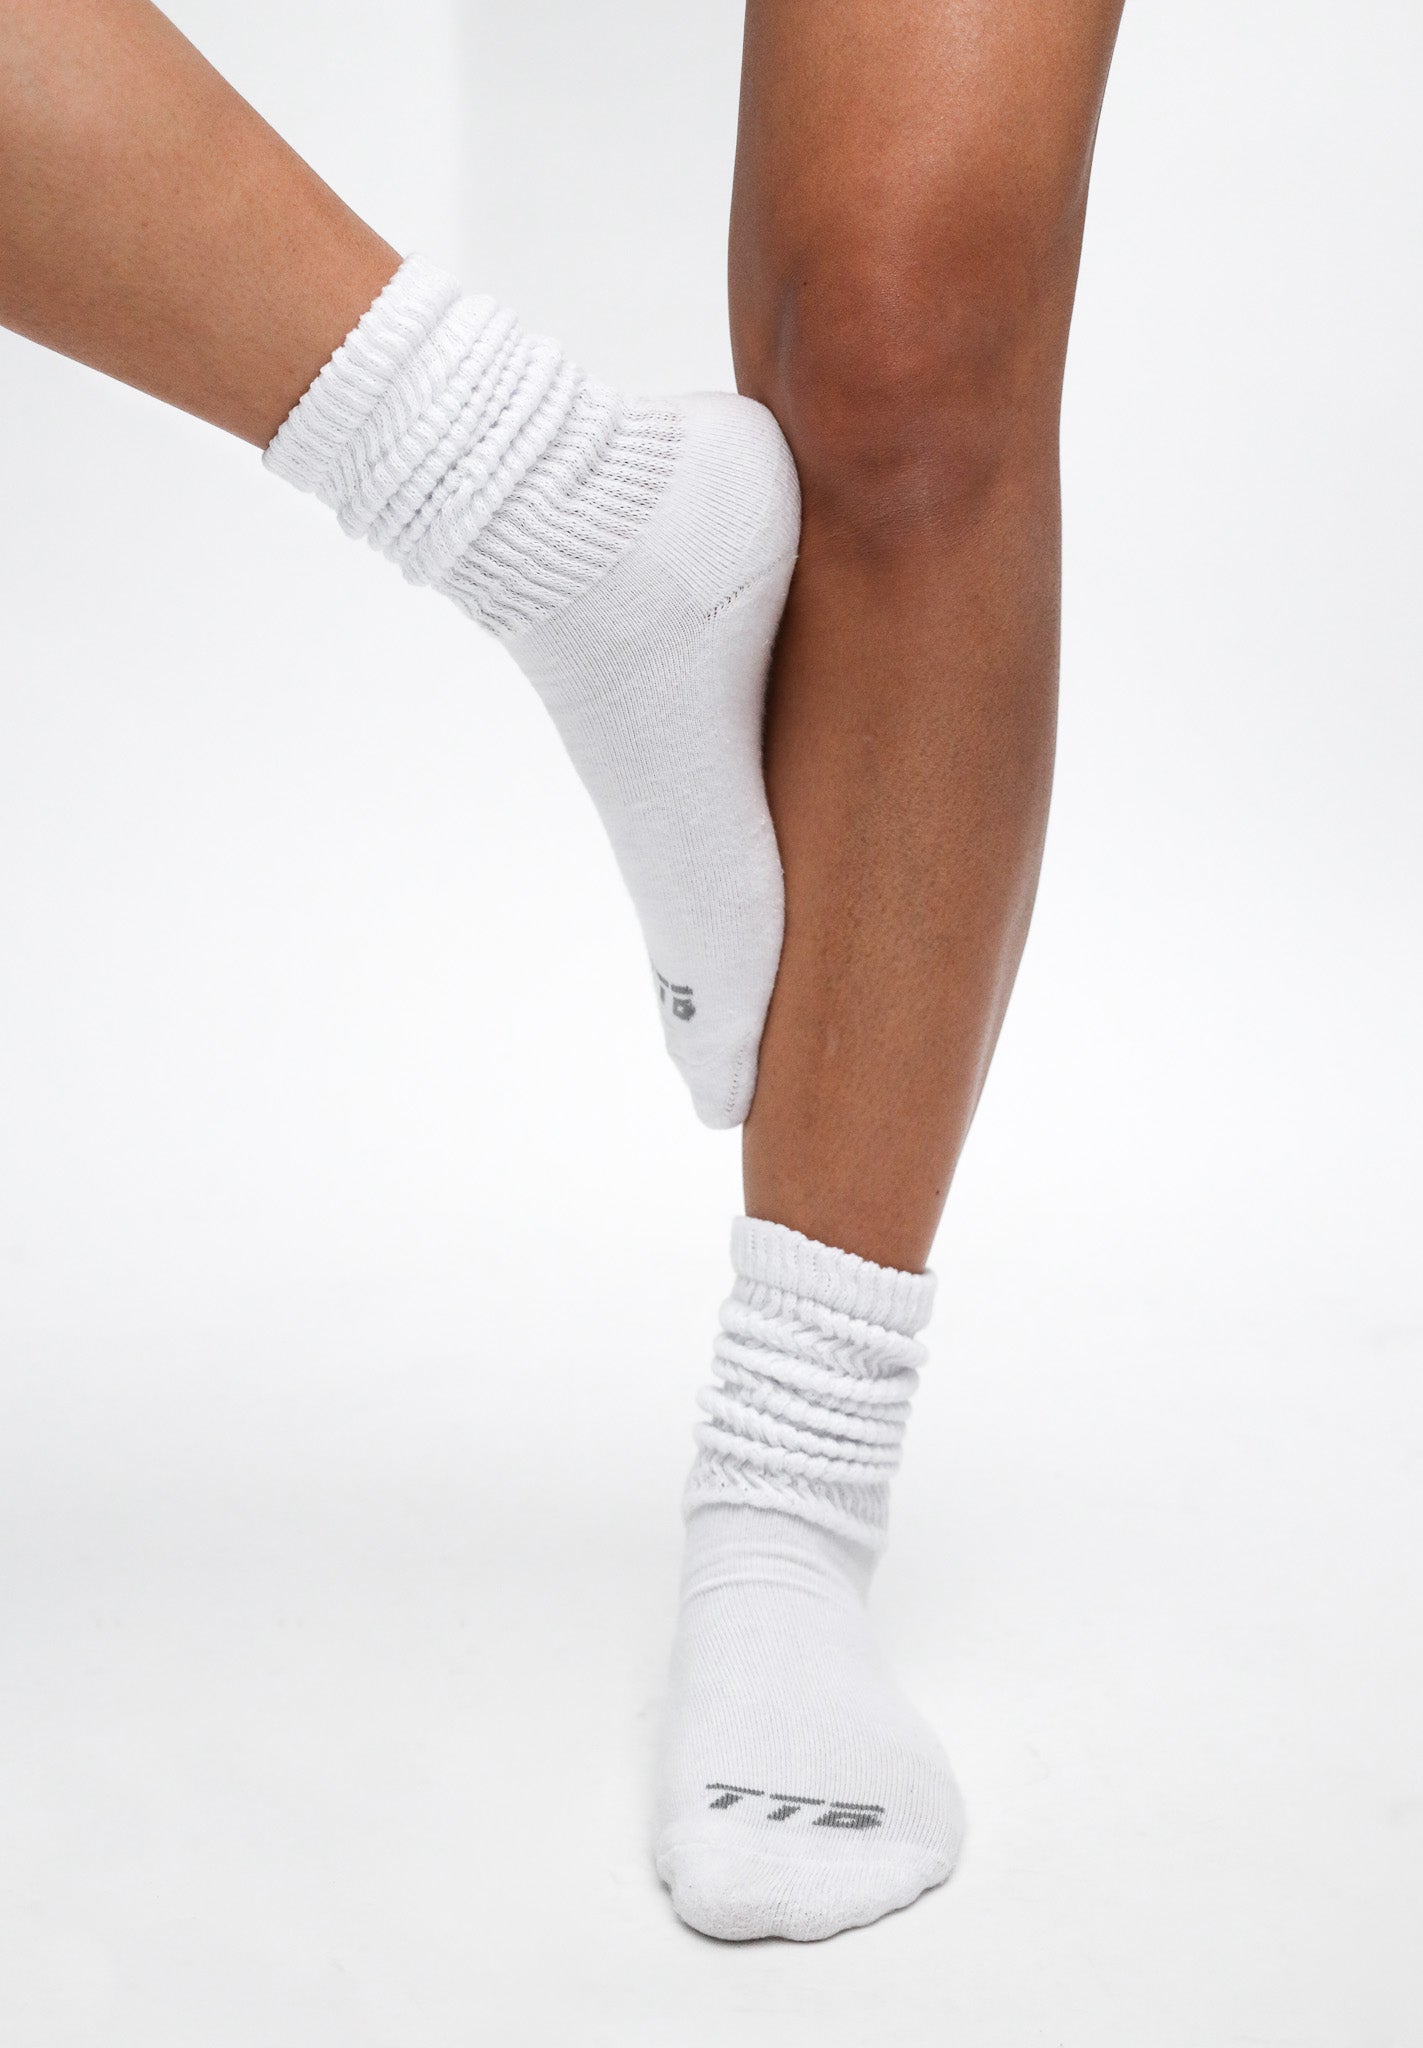 Slouch Socks - Ultra-Comfortable Socks